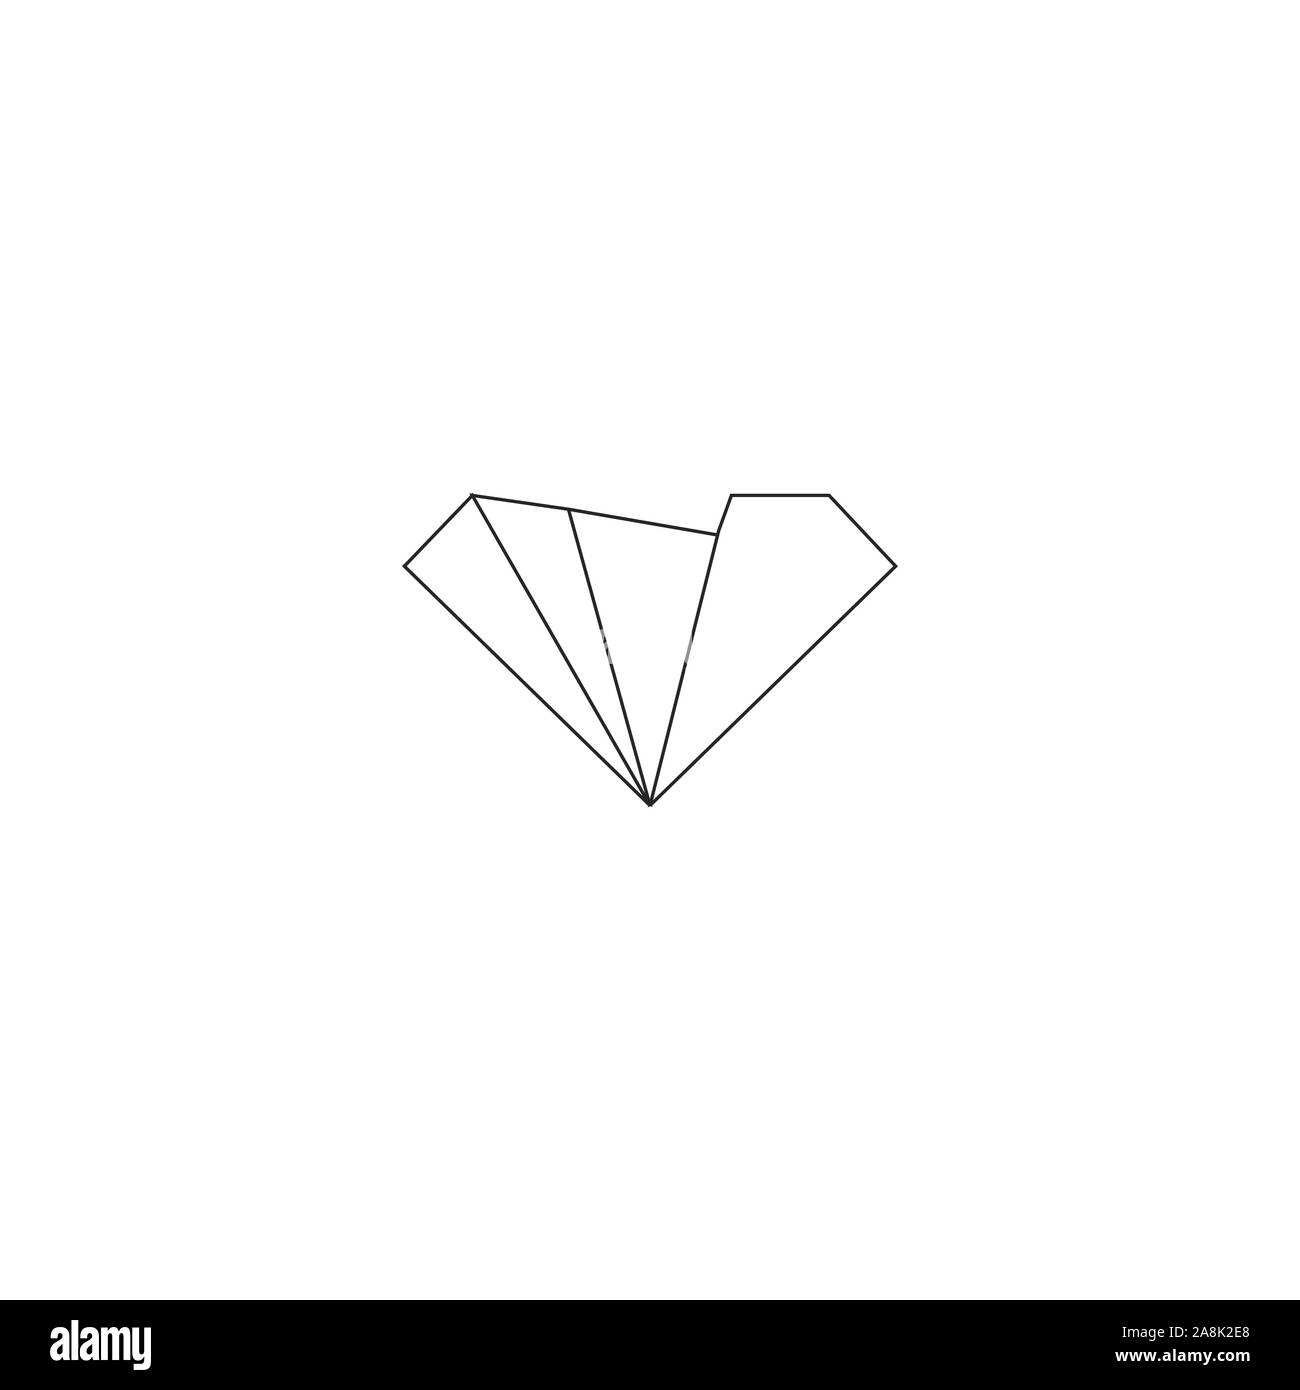 Diamond logo vector design templates Stock Vector